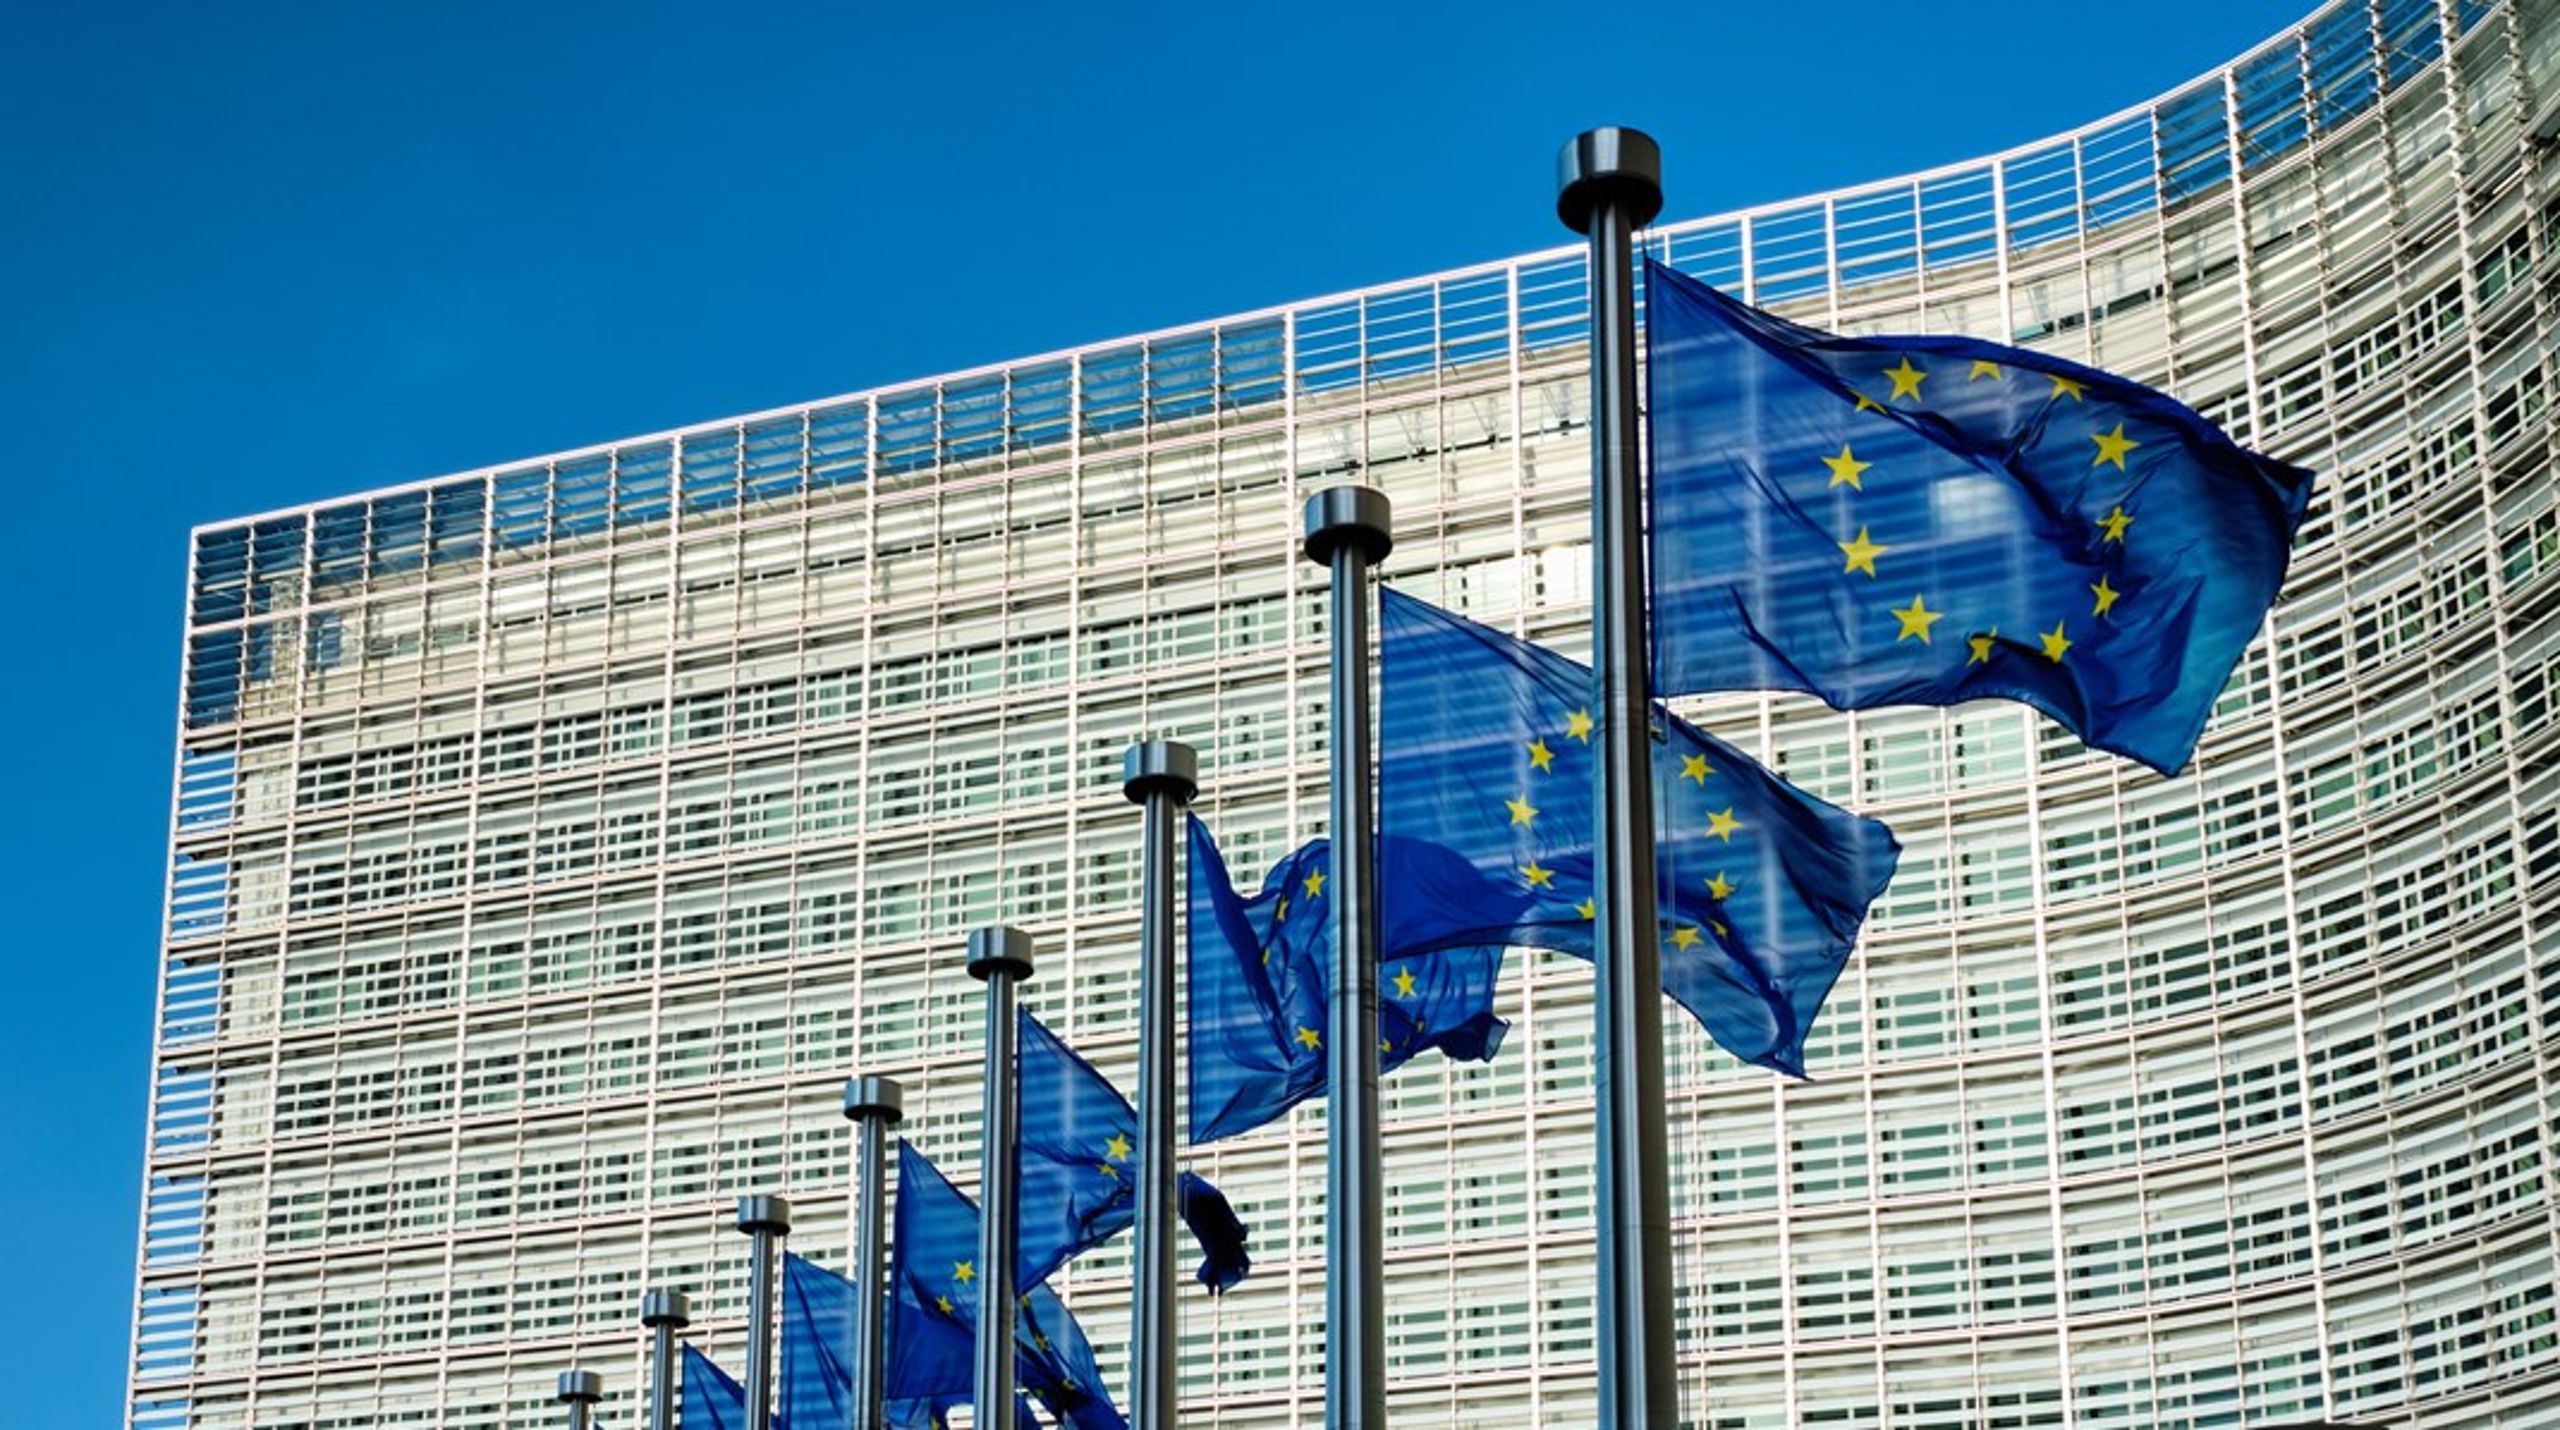 EU-Kommissionen har annonceret vidtrækkende regulering af den digitale økonomi i unionen. Forslagene giver&nbsp;anledning til nogle ganske alvorlige
bekymringer, skriver&nbsp;Henrik Theil og Christian Von Stamm Jonasson.